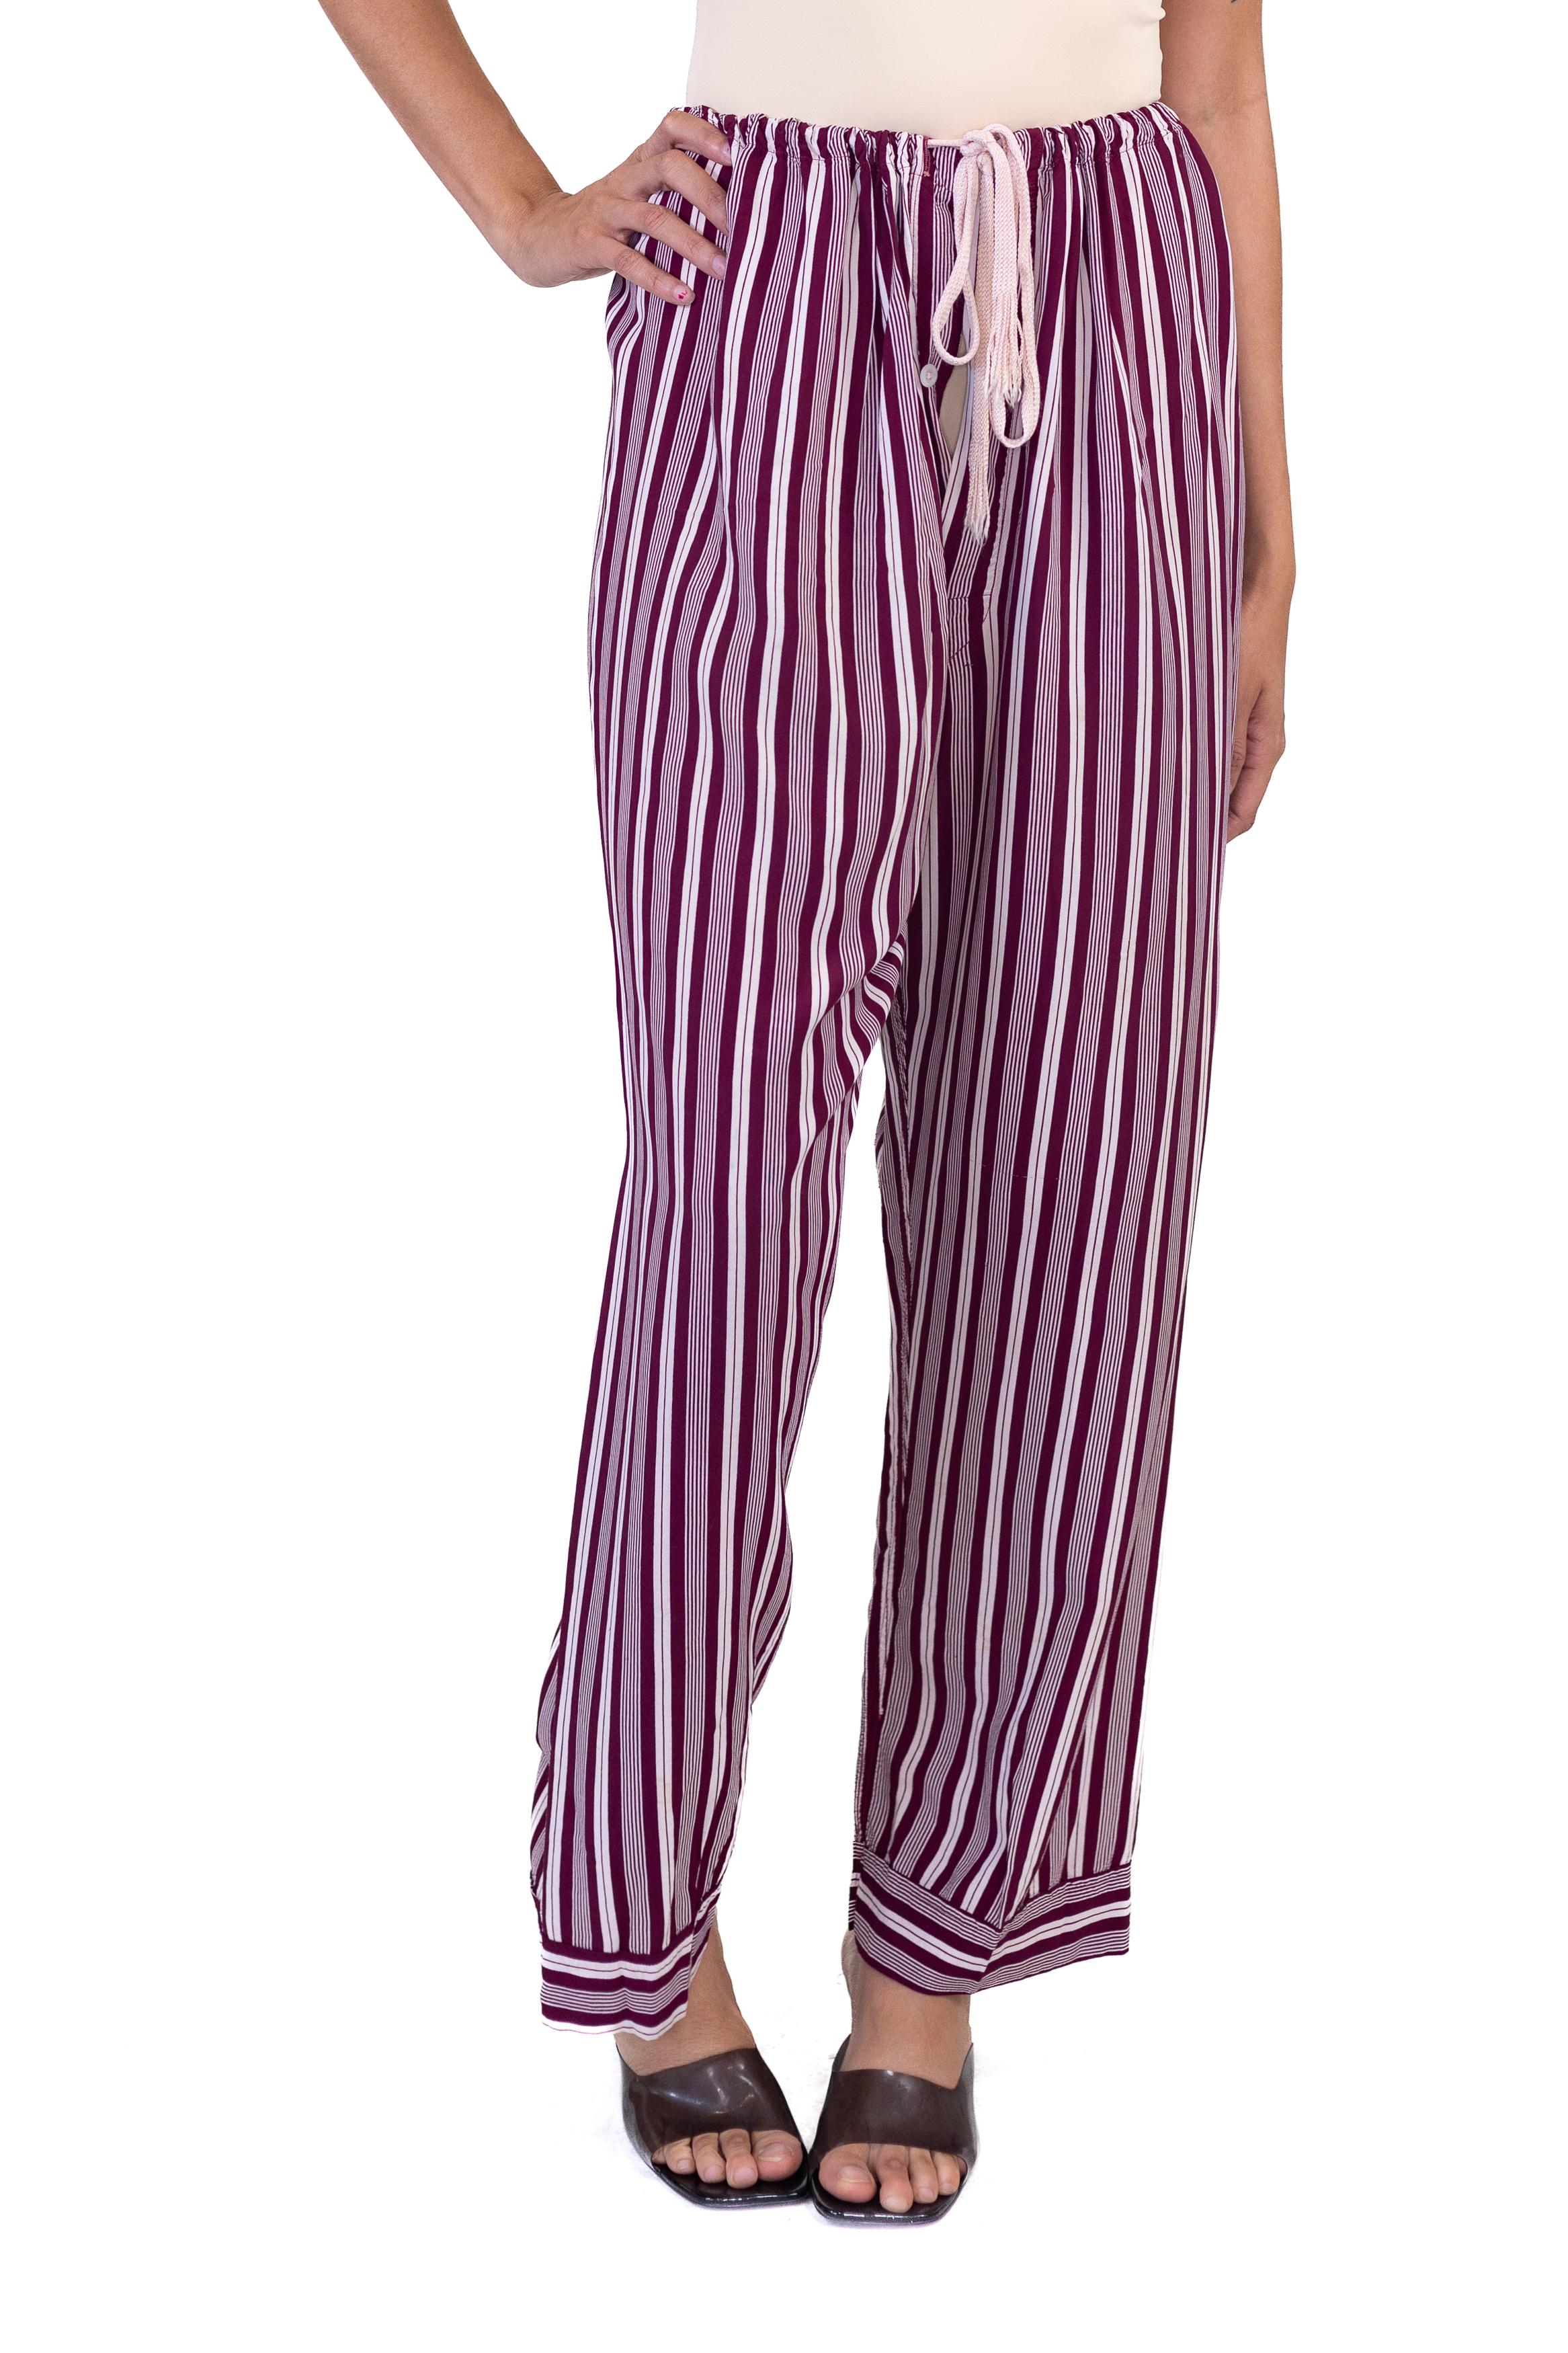 1940S Burgundy Striped Rayon Pajama Pants For Sale 3